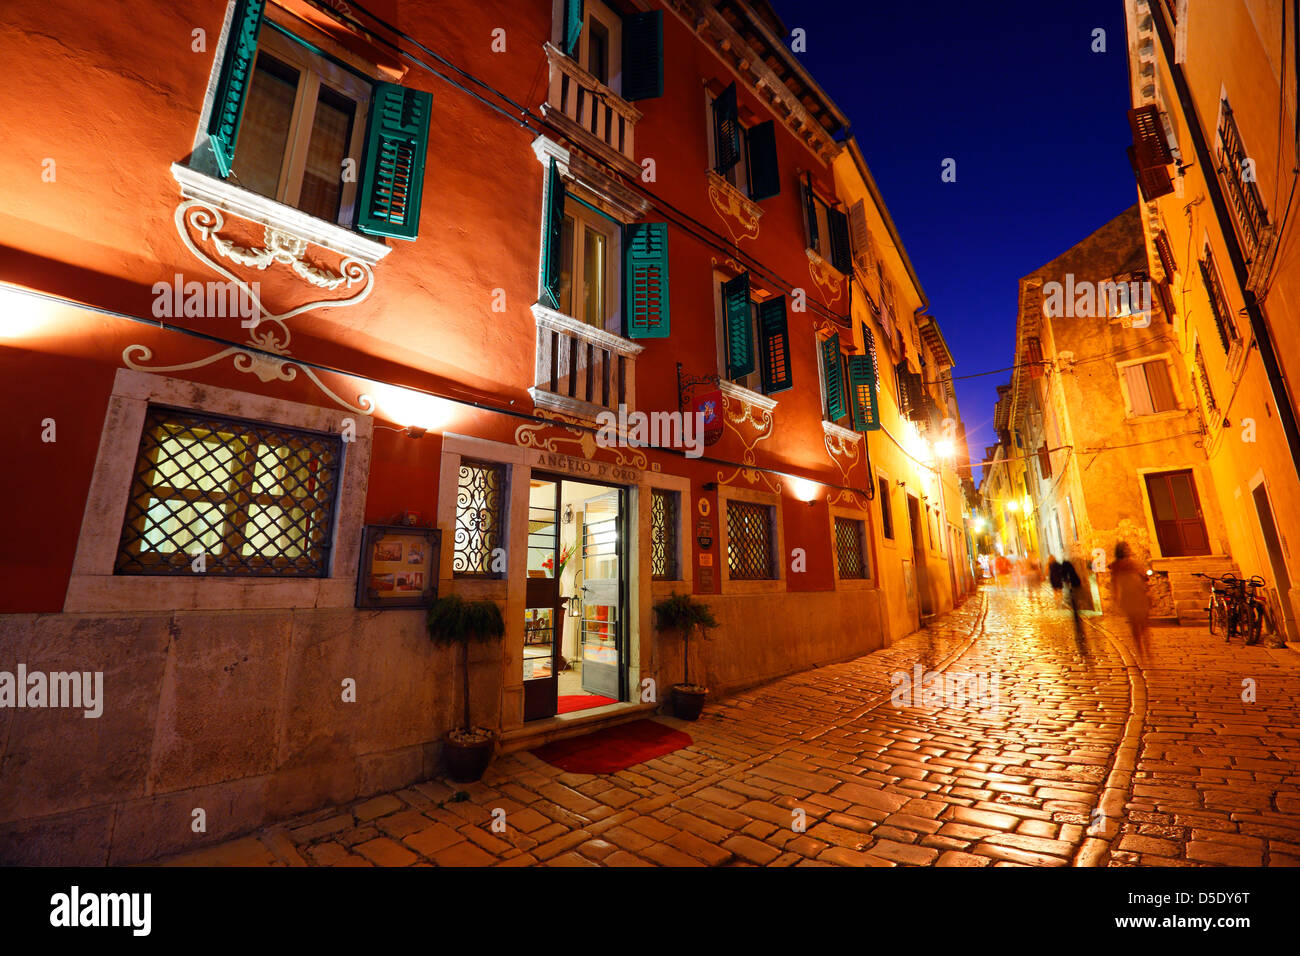 Old street in Rovinj town at night in Istria, Croatia Stock Photo